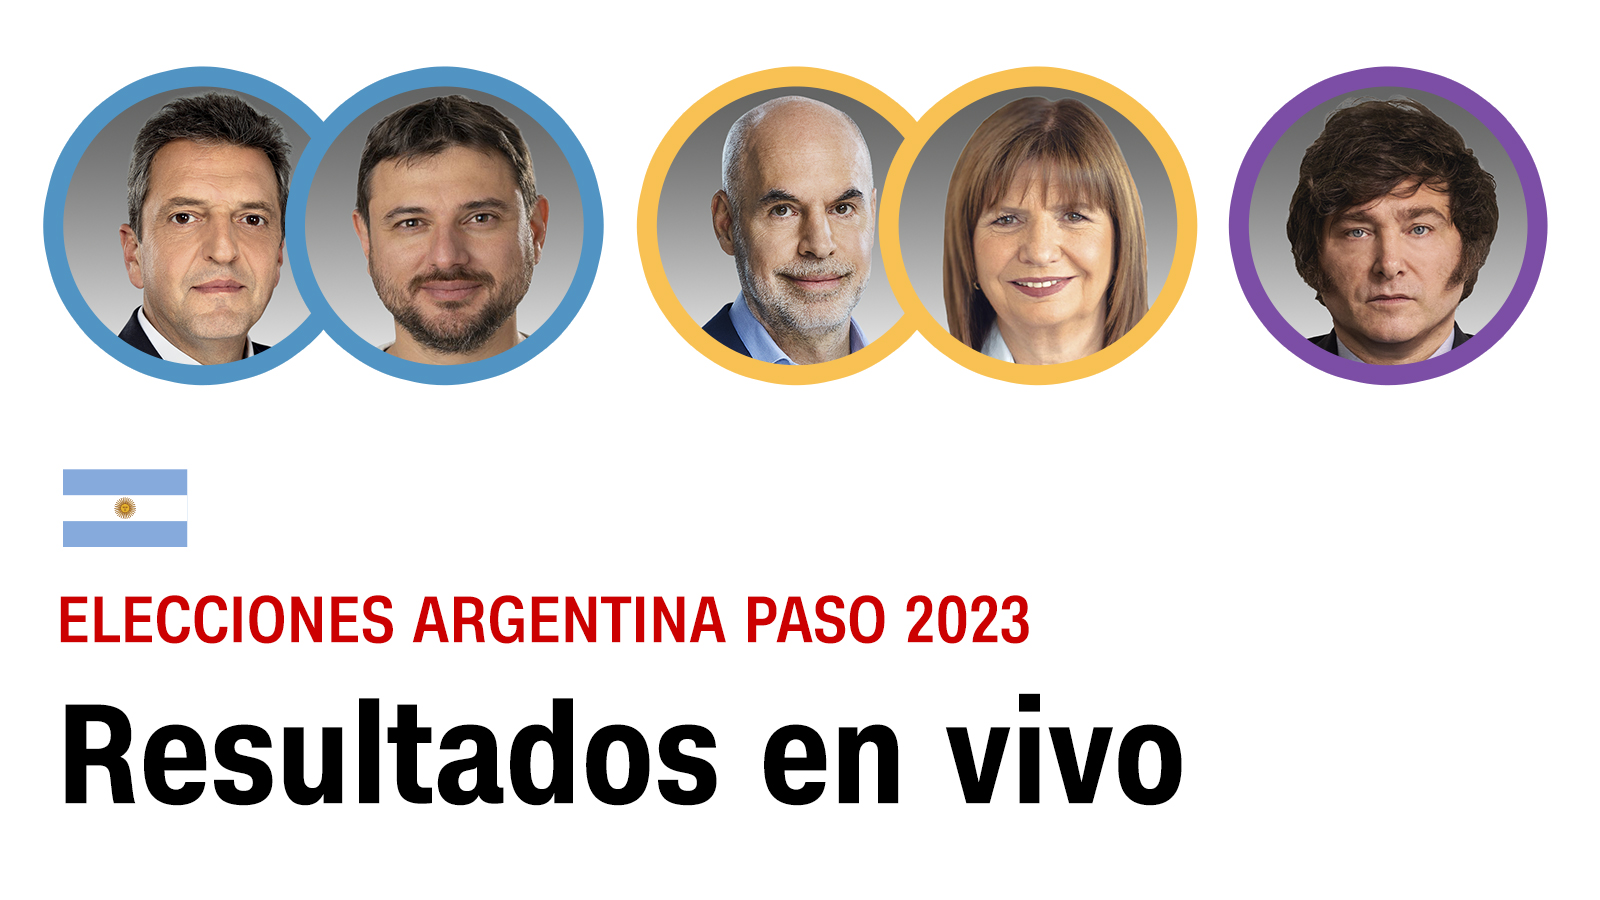 Consulta los resultados de las elecciones PASO 2023 en Argentina